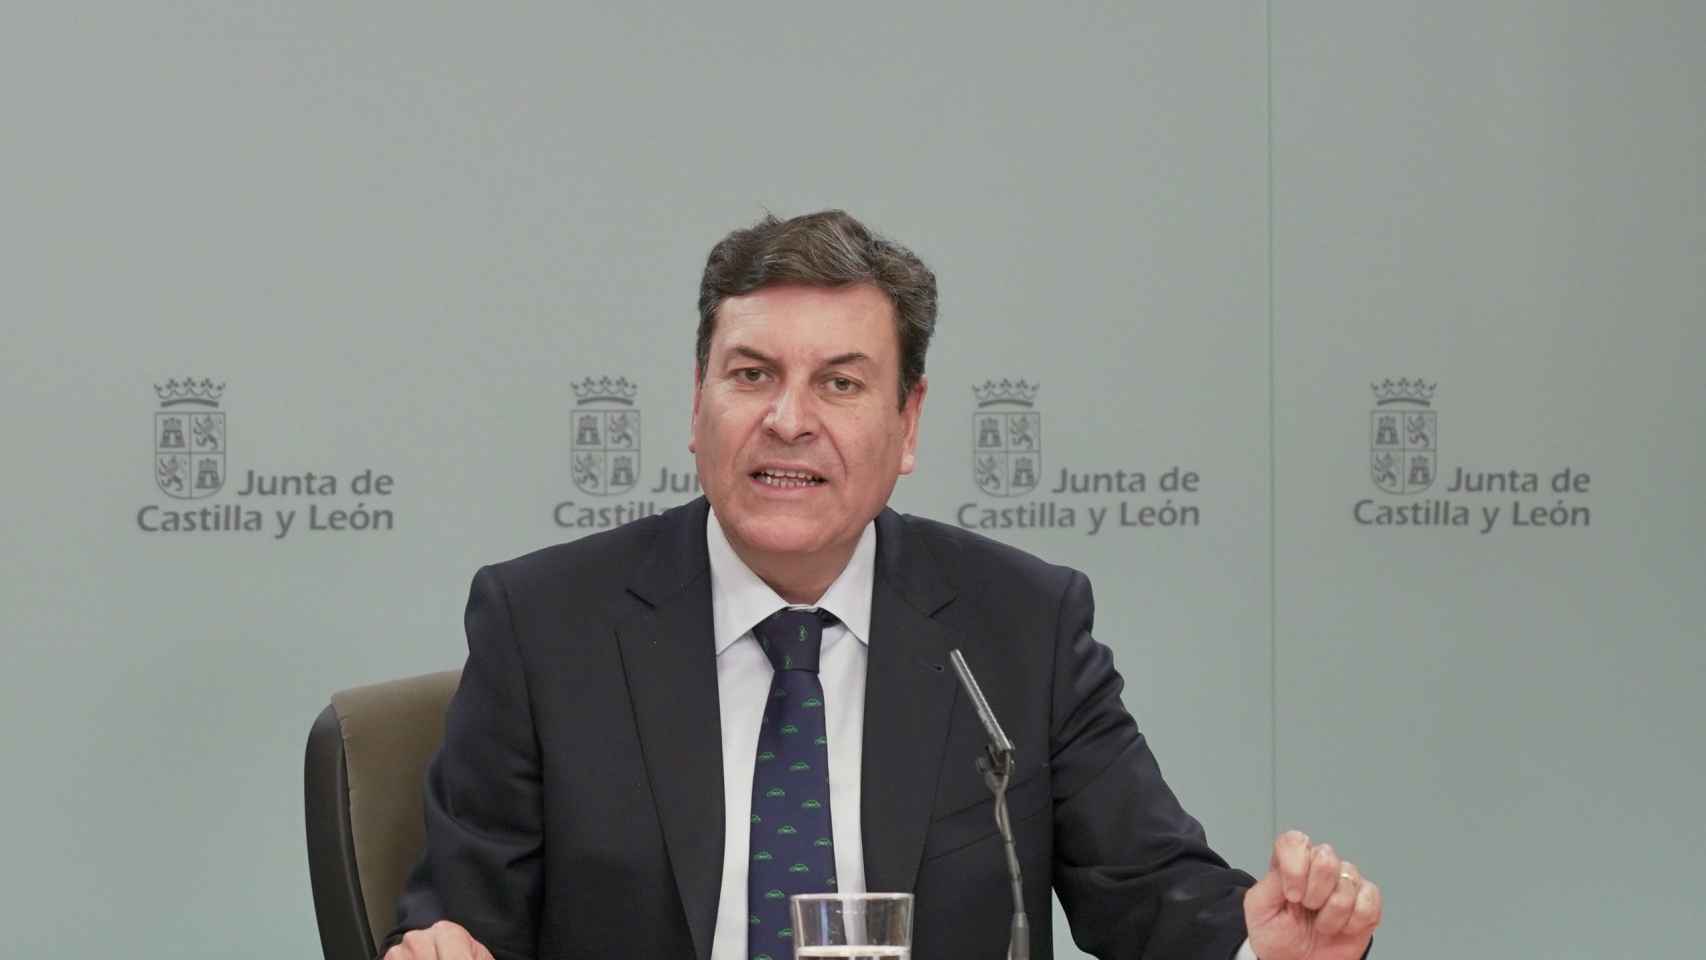 El consejero de Economía y Hacienda y portavoz, Carlos Fdez. Carriedo, comparece en rueda de prensa posterior al Consejo de Gobierno